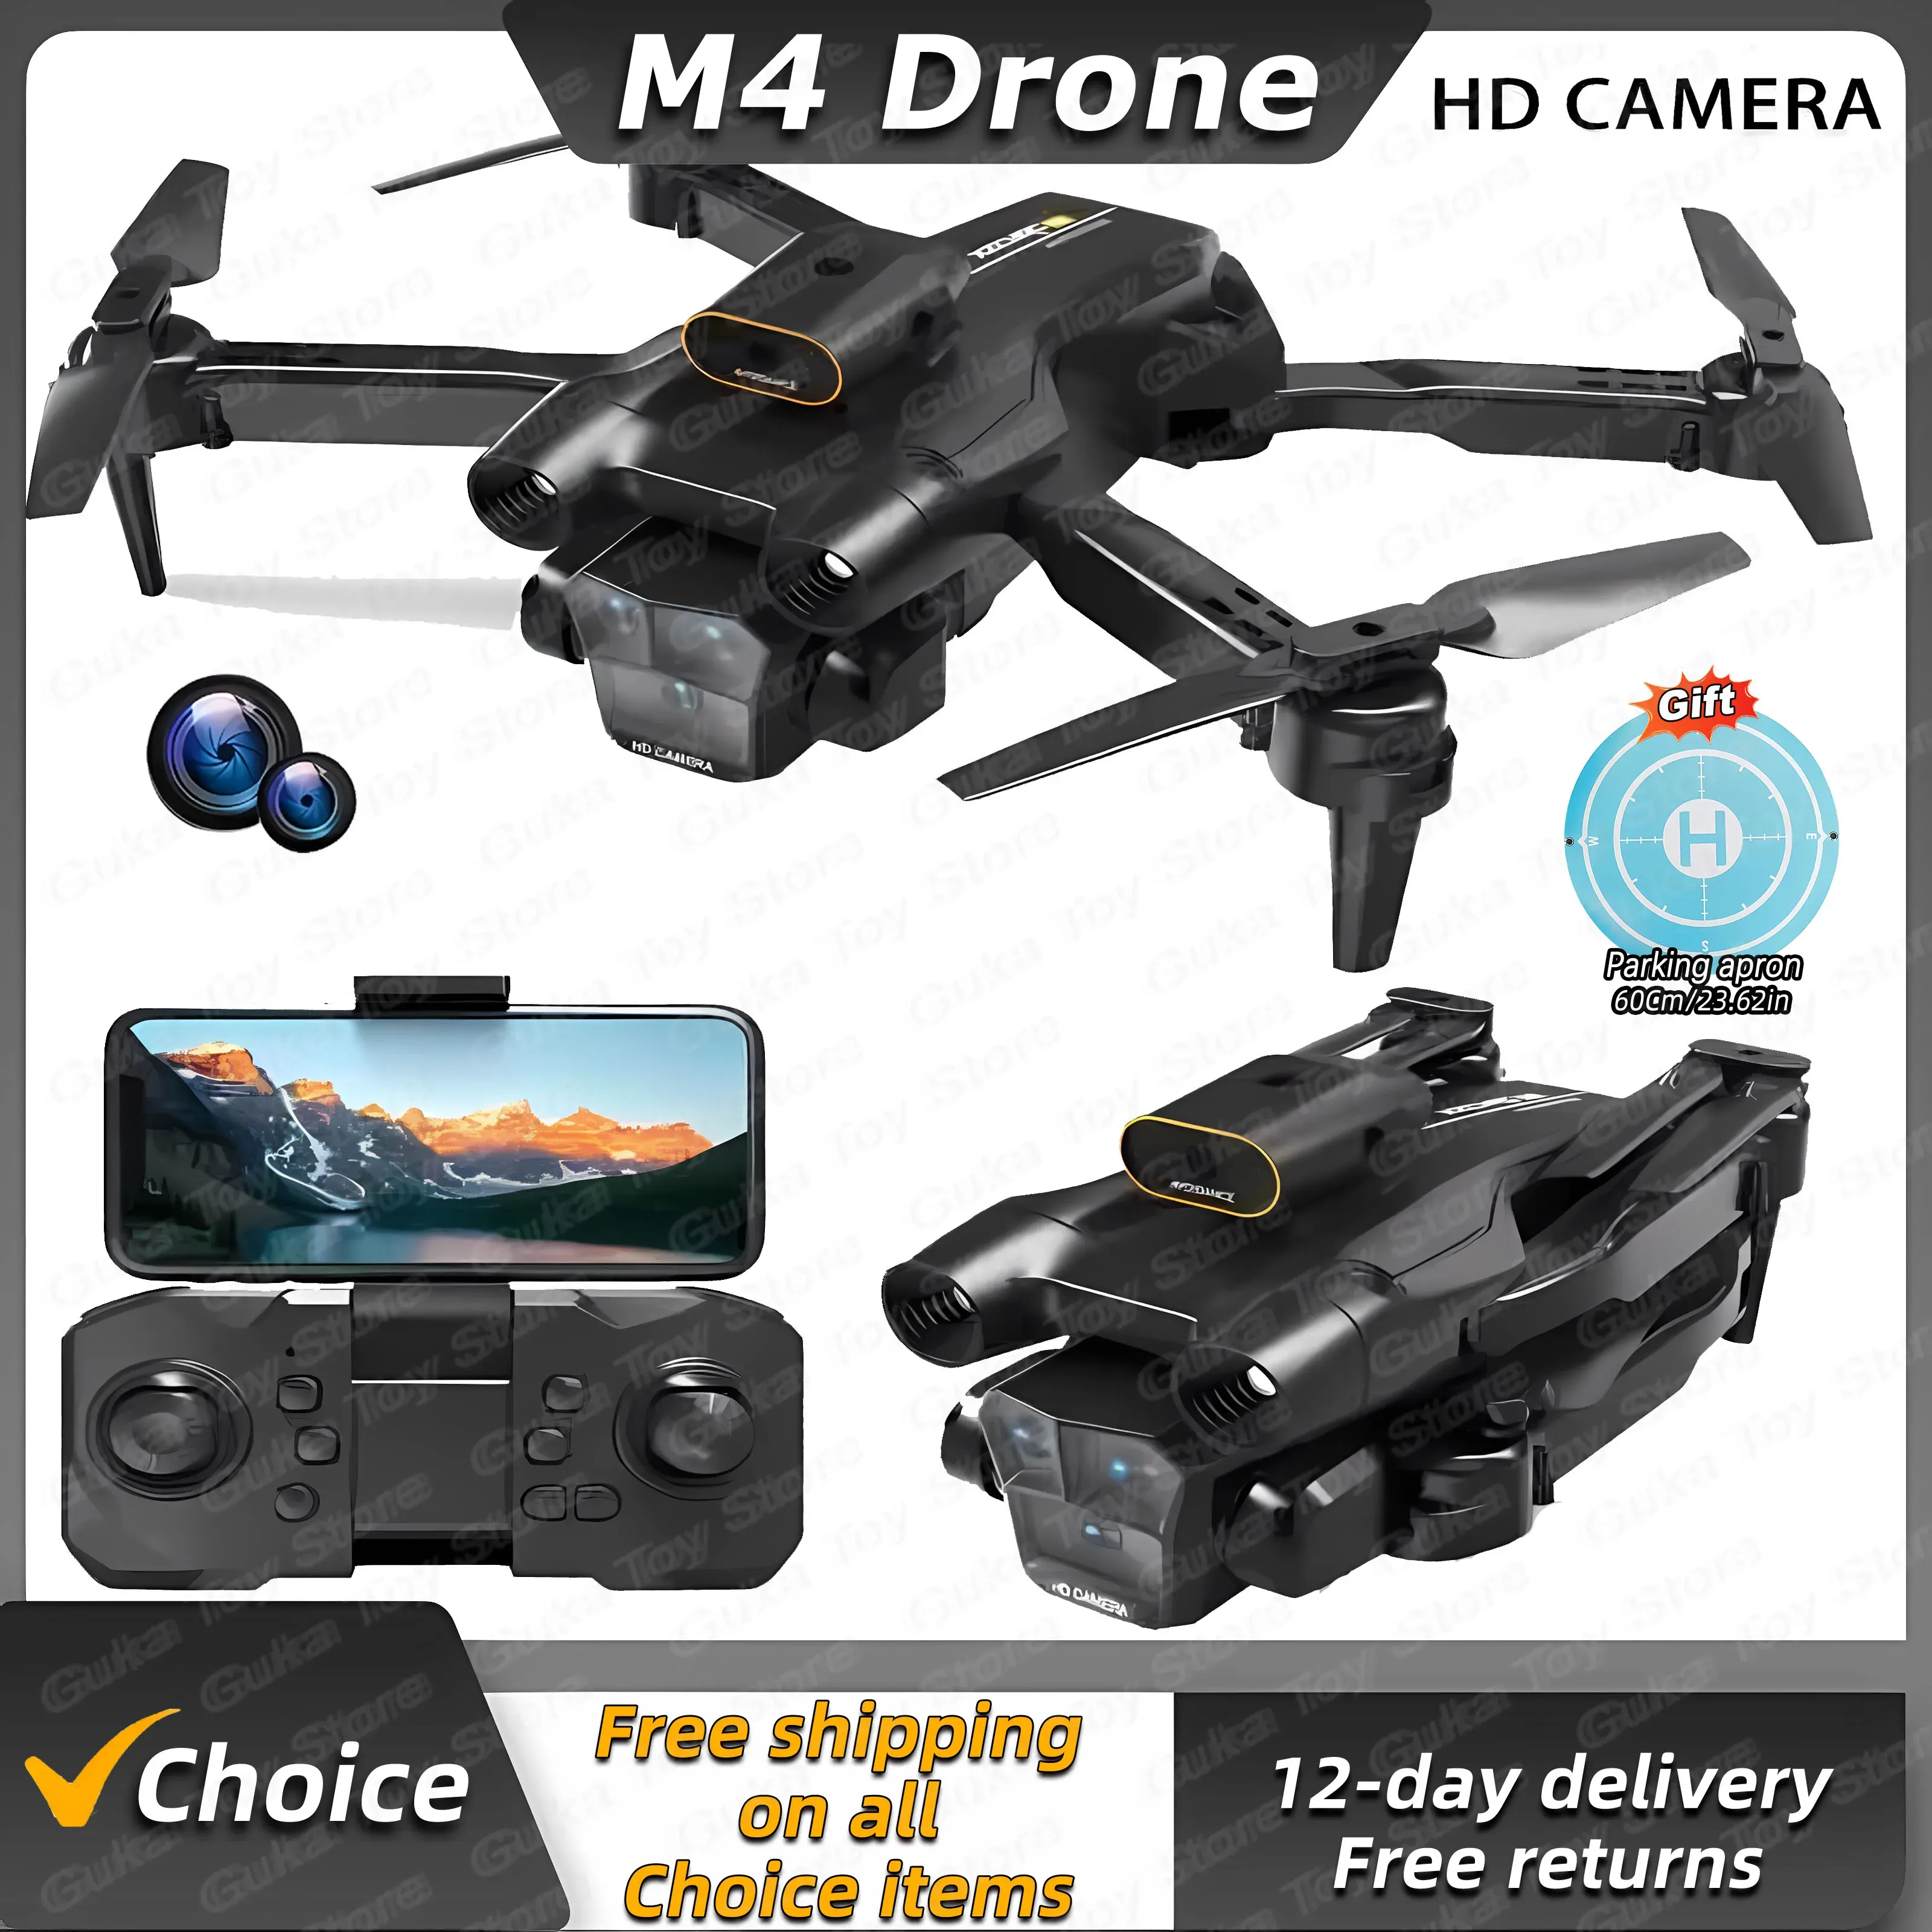 Drönare M4 Drone 4K Professinal med vidvinkel Triple HD Camera Foldbar App Remote Control Helicopter WiFi FPV Höjd Håll förkläde säljer